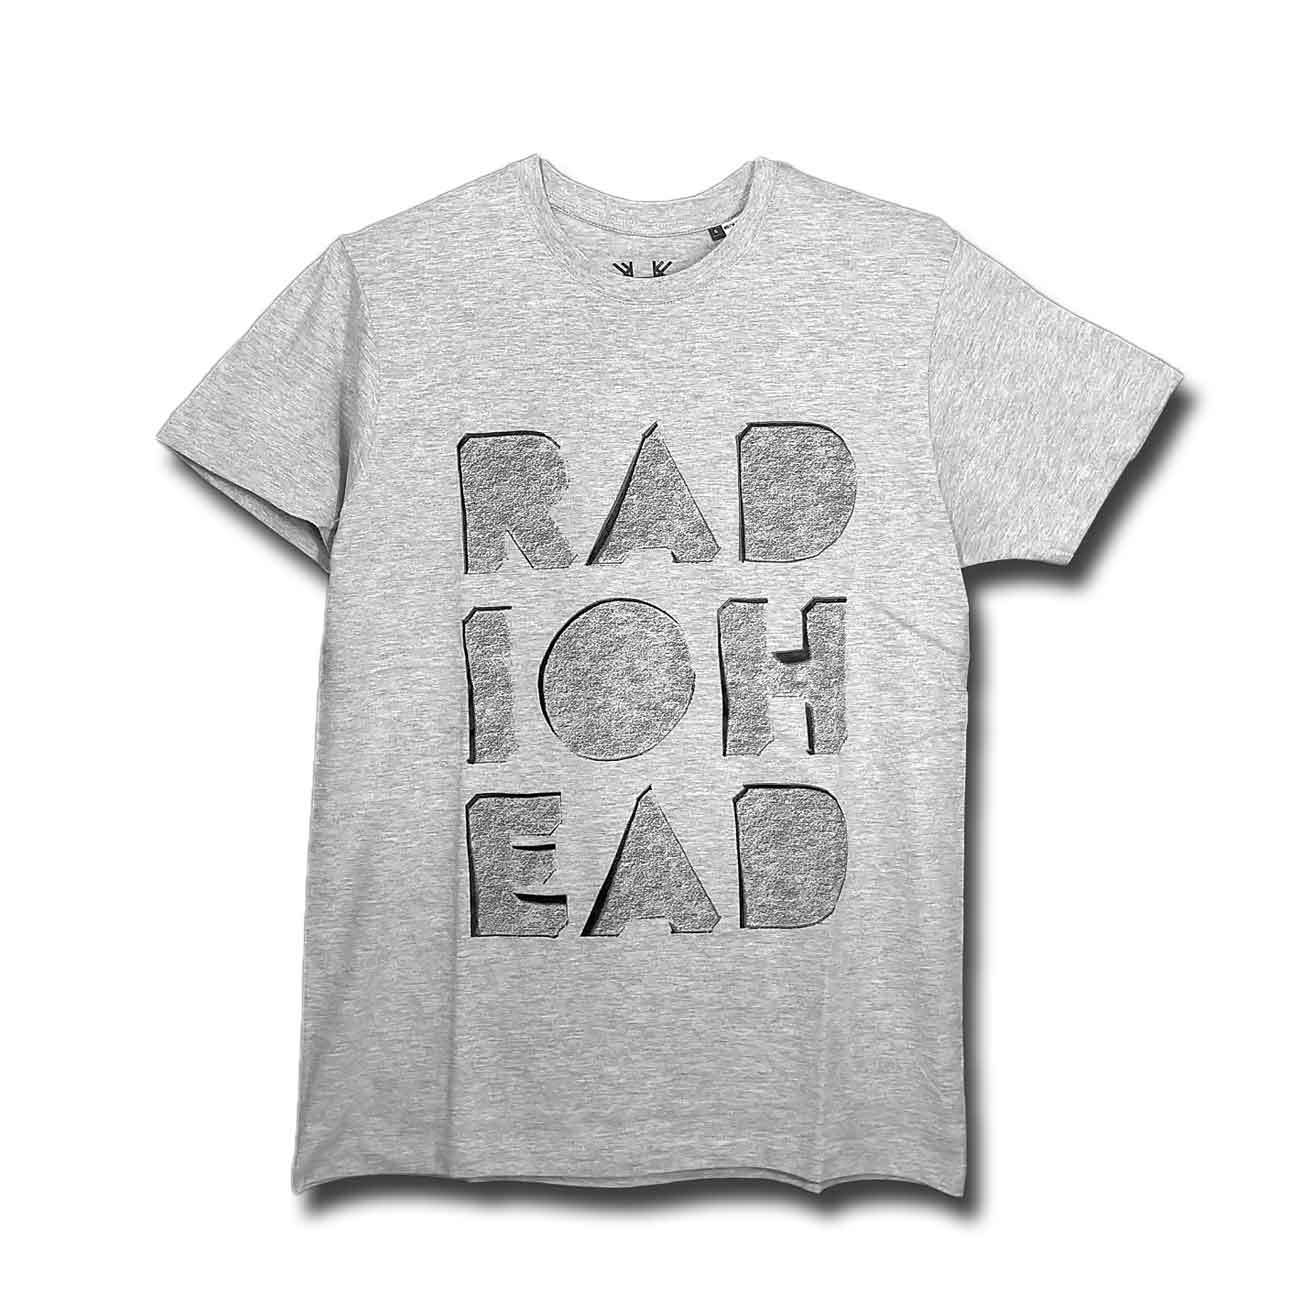 【バックプリント有り】レディオヘッド  Tシャツ Radiohead